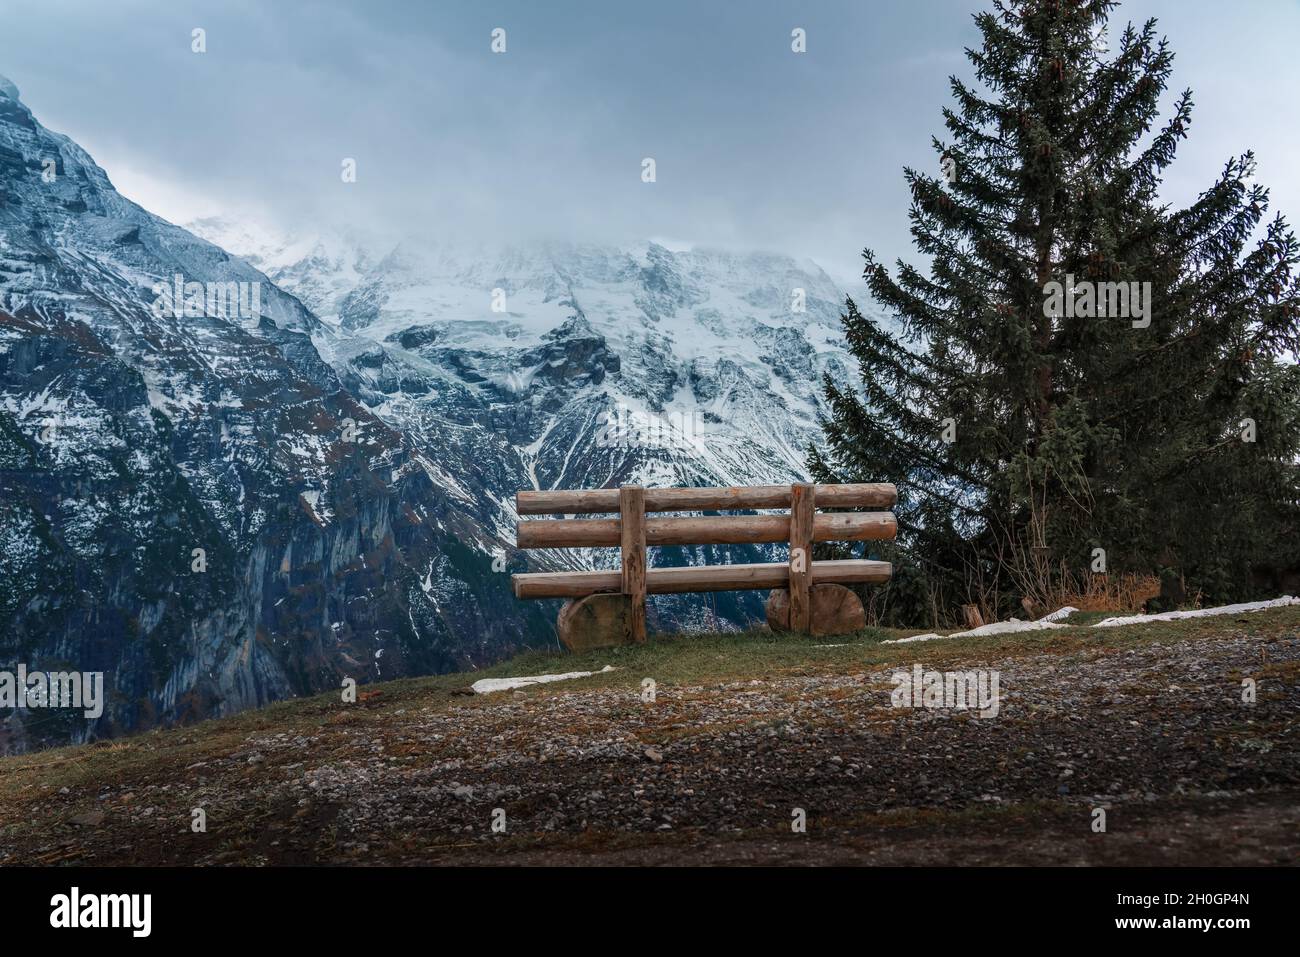 Wooden bench overlooking Alps Mountains - Murren, Switzerland Stock Photo